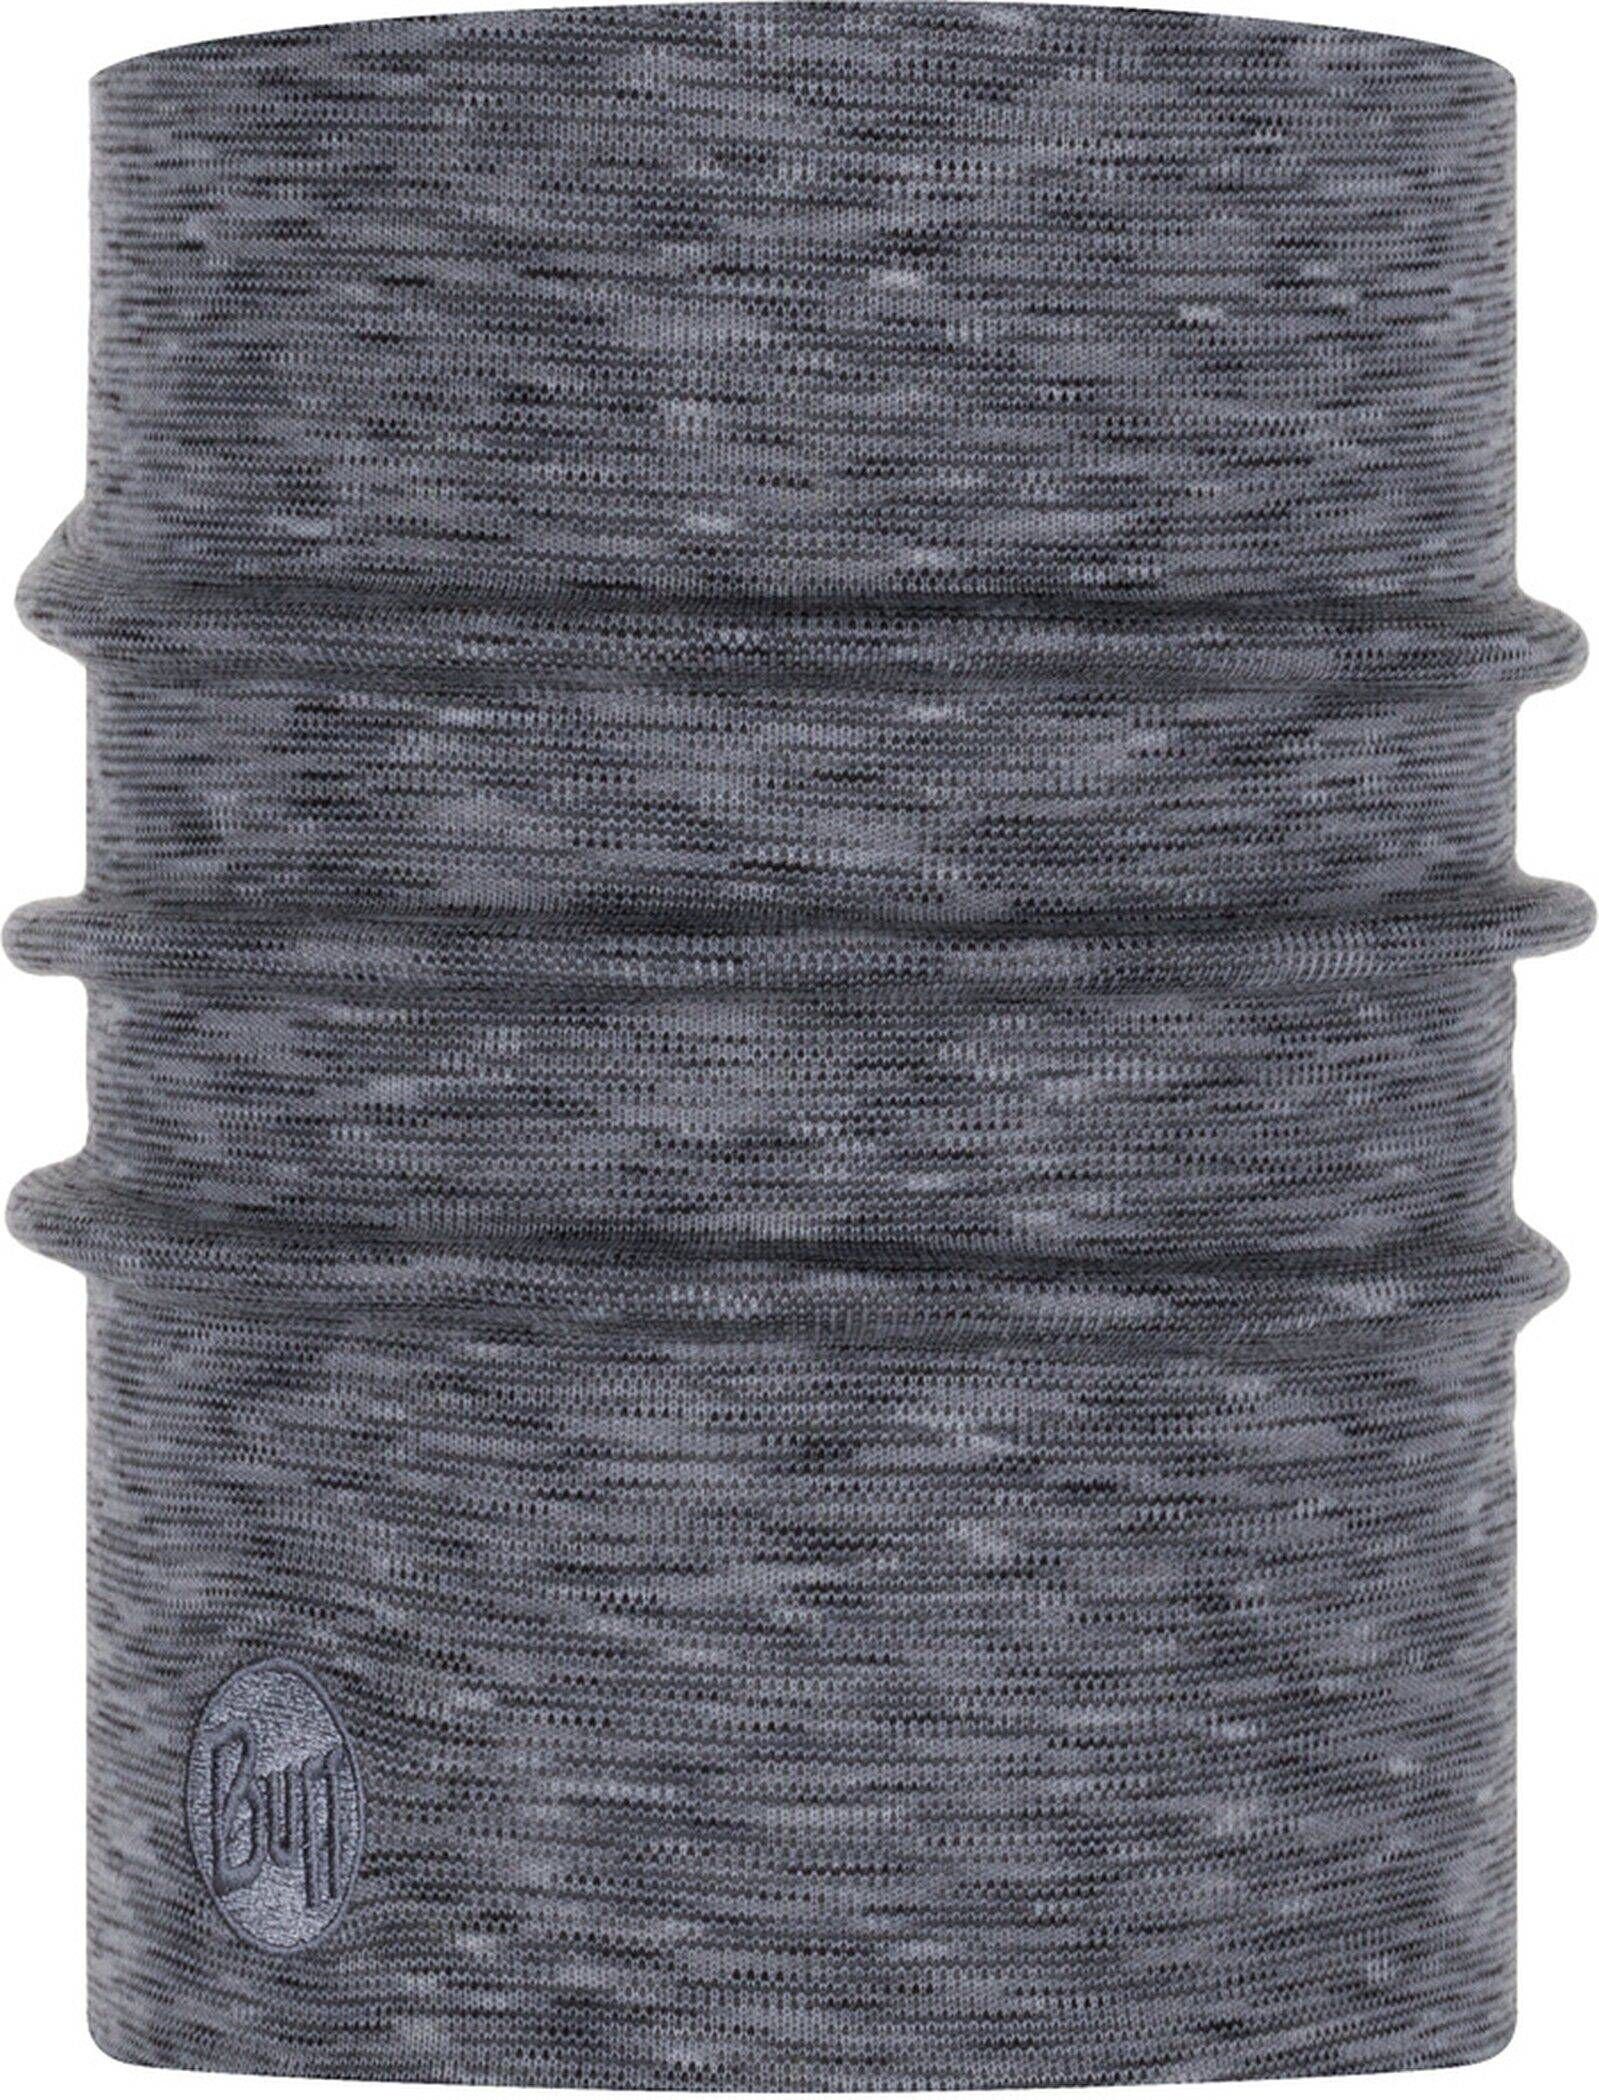 Buff Loop Halswärmer Grau-fog grey multi stripes